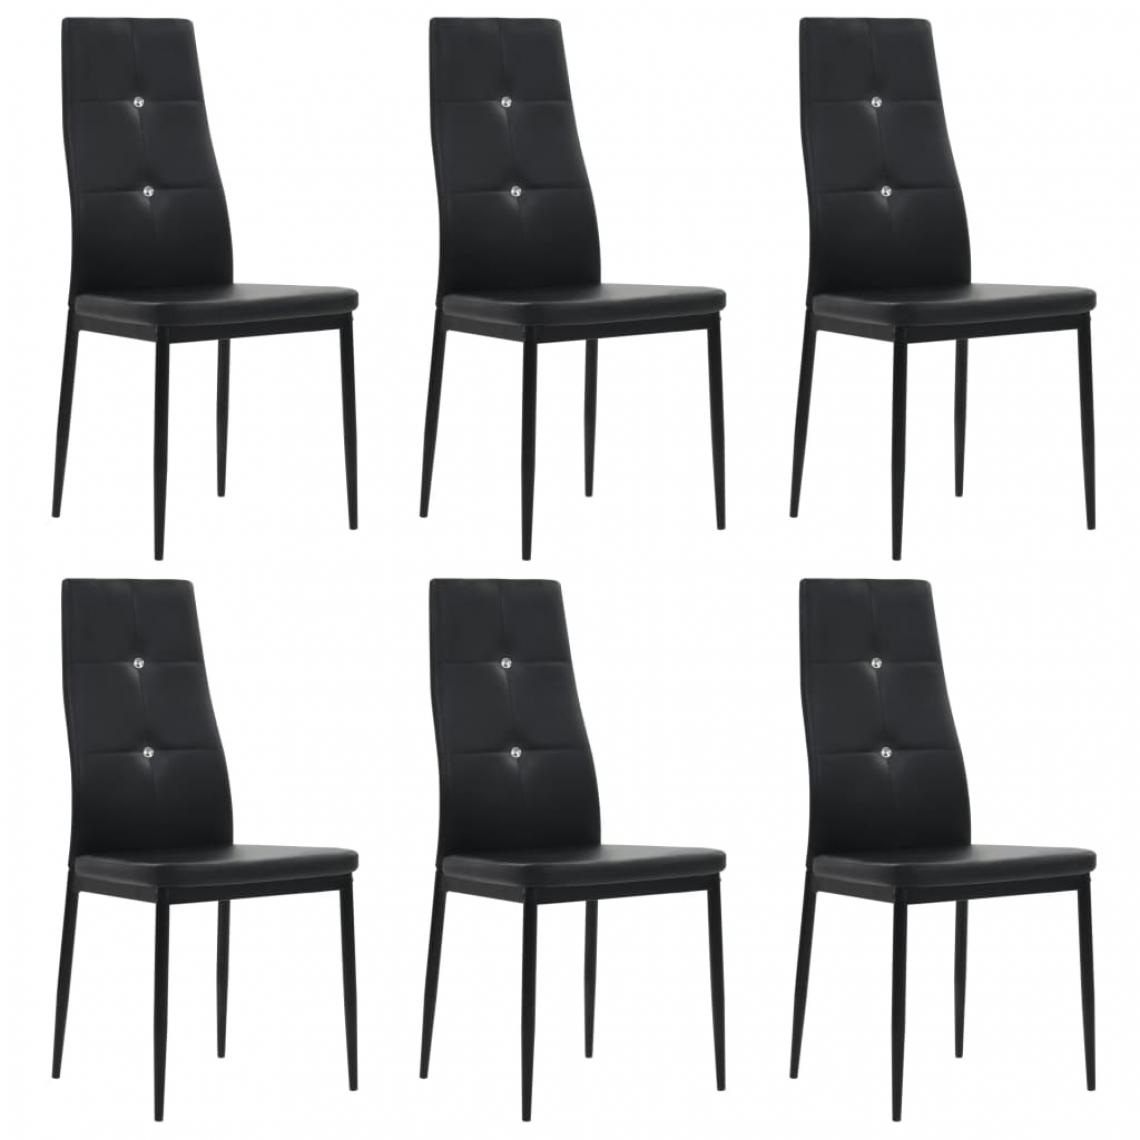 Decoshop26 - Lot de 6 chaises de salle à manger cuisine design moderne similicuir noir CDS022693 - Chaises